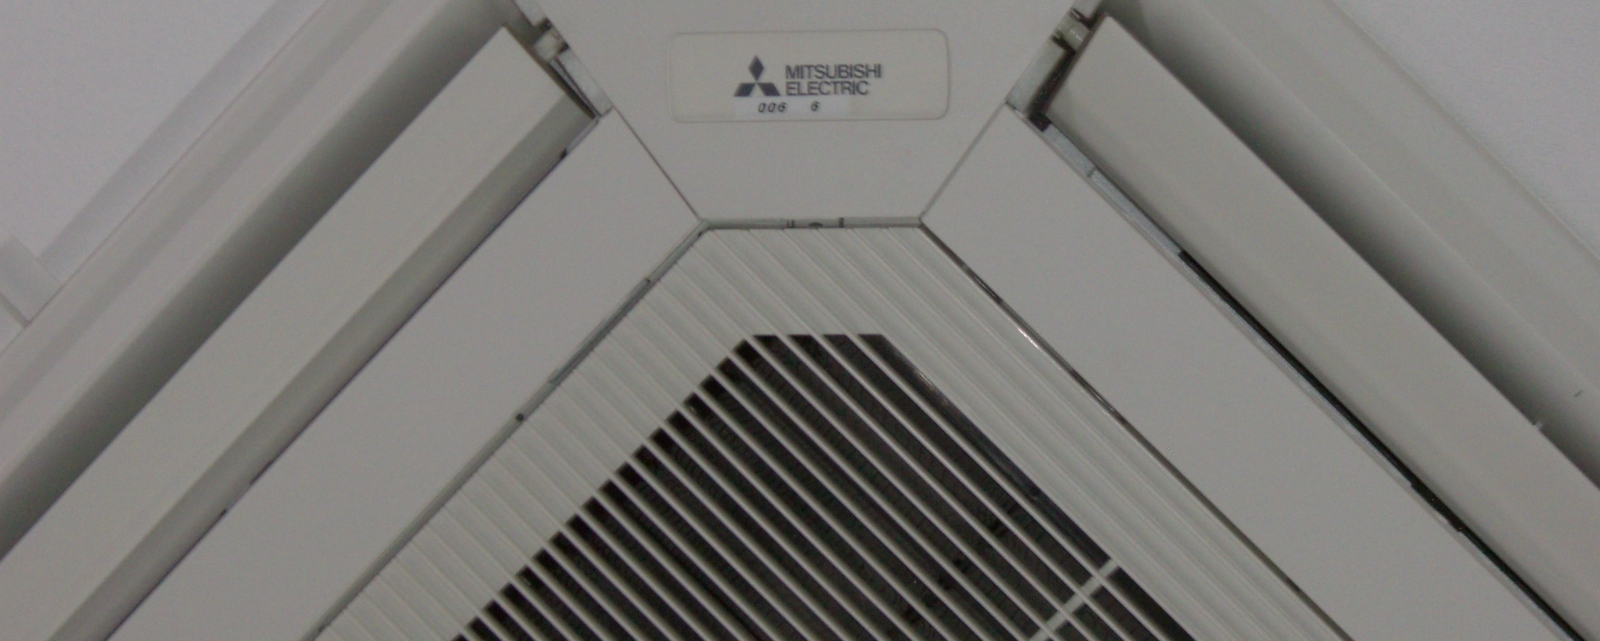 Bespoke cooling system design